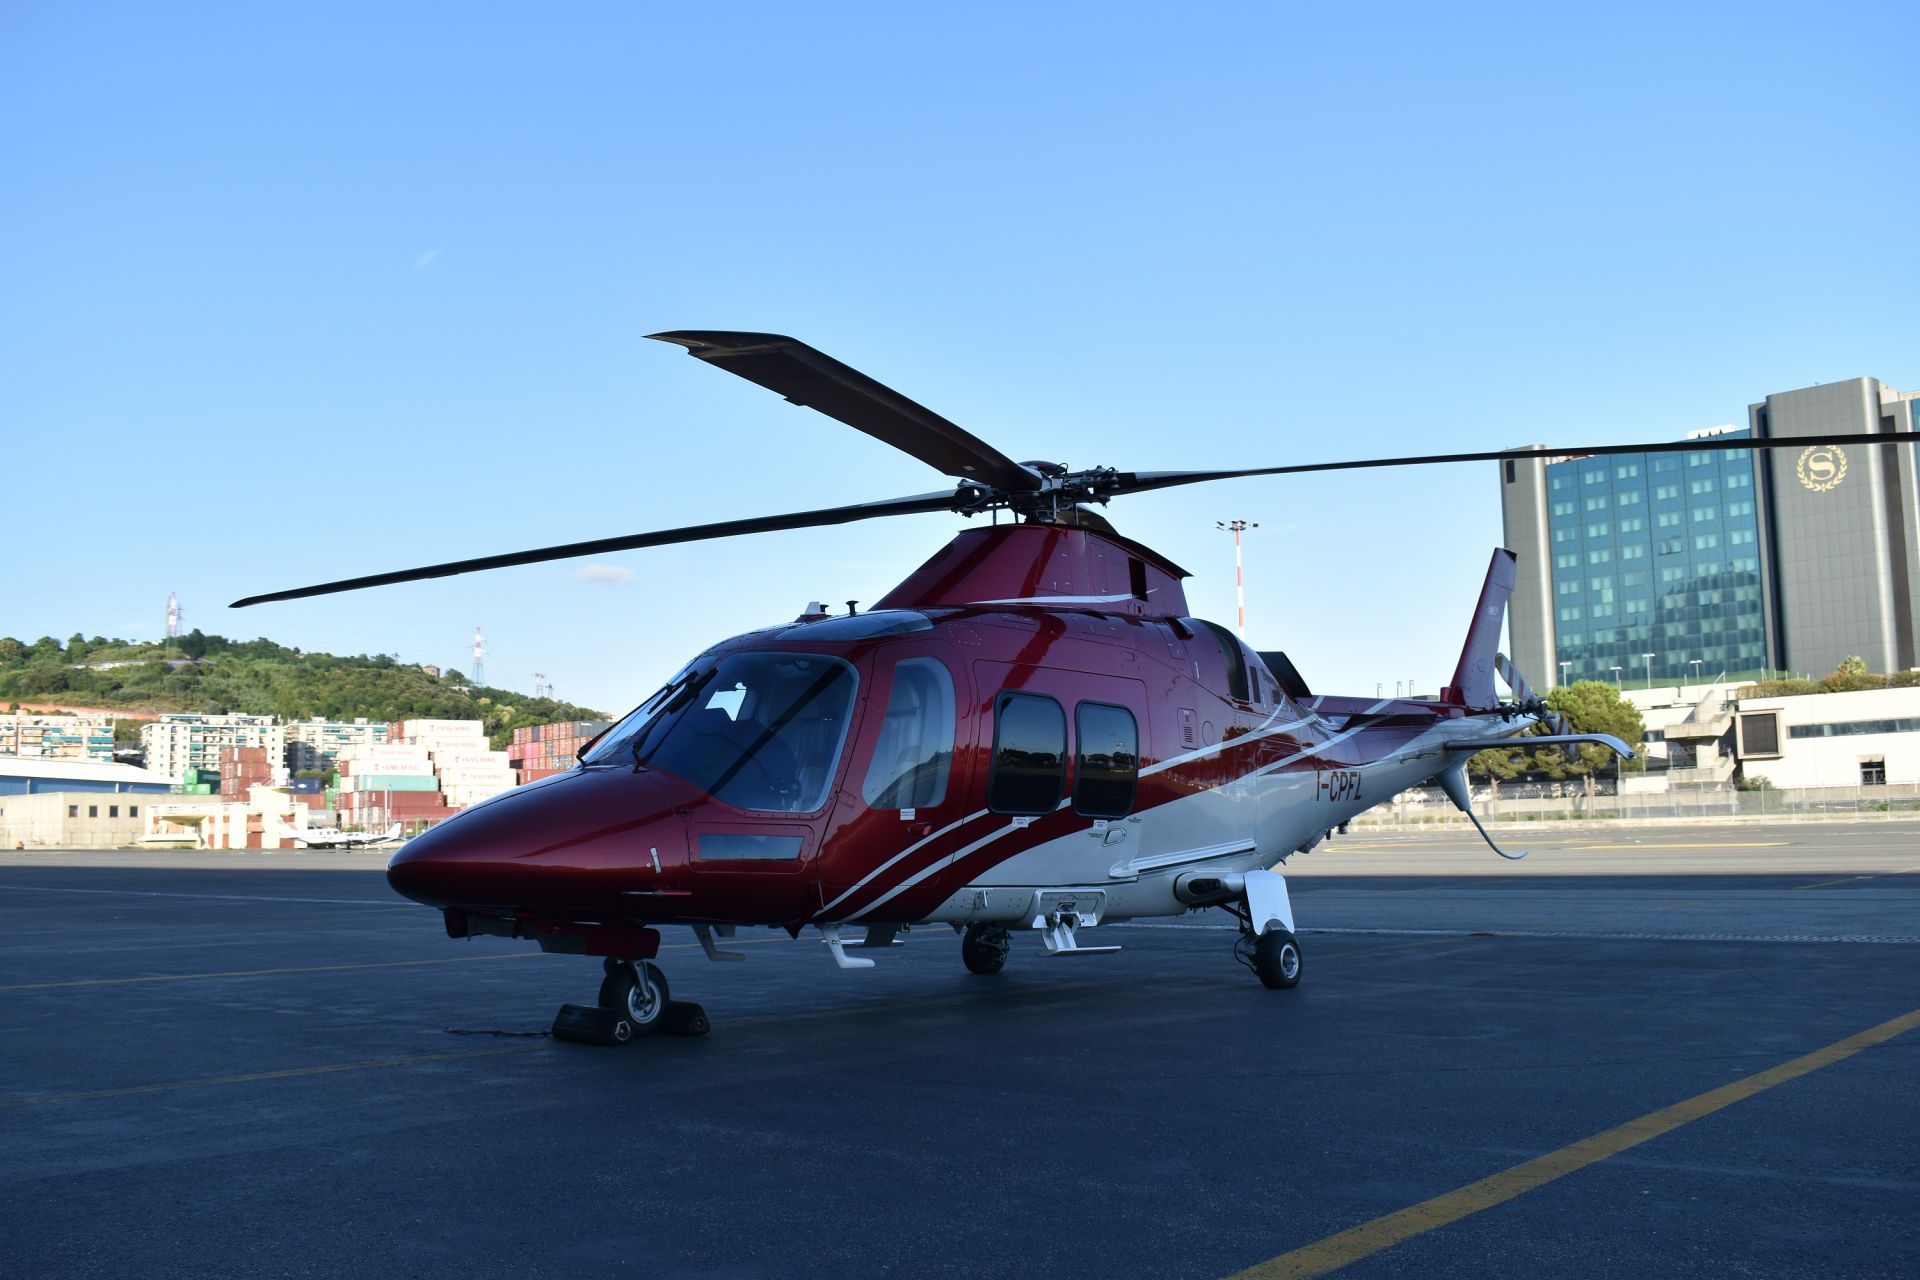 Aeroporto di Genova, nuovo elicottero per voli privati verso le riviere e la Costa Azzurra